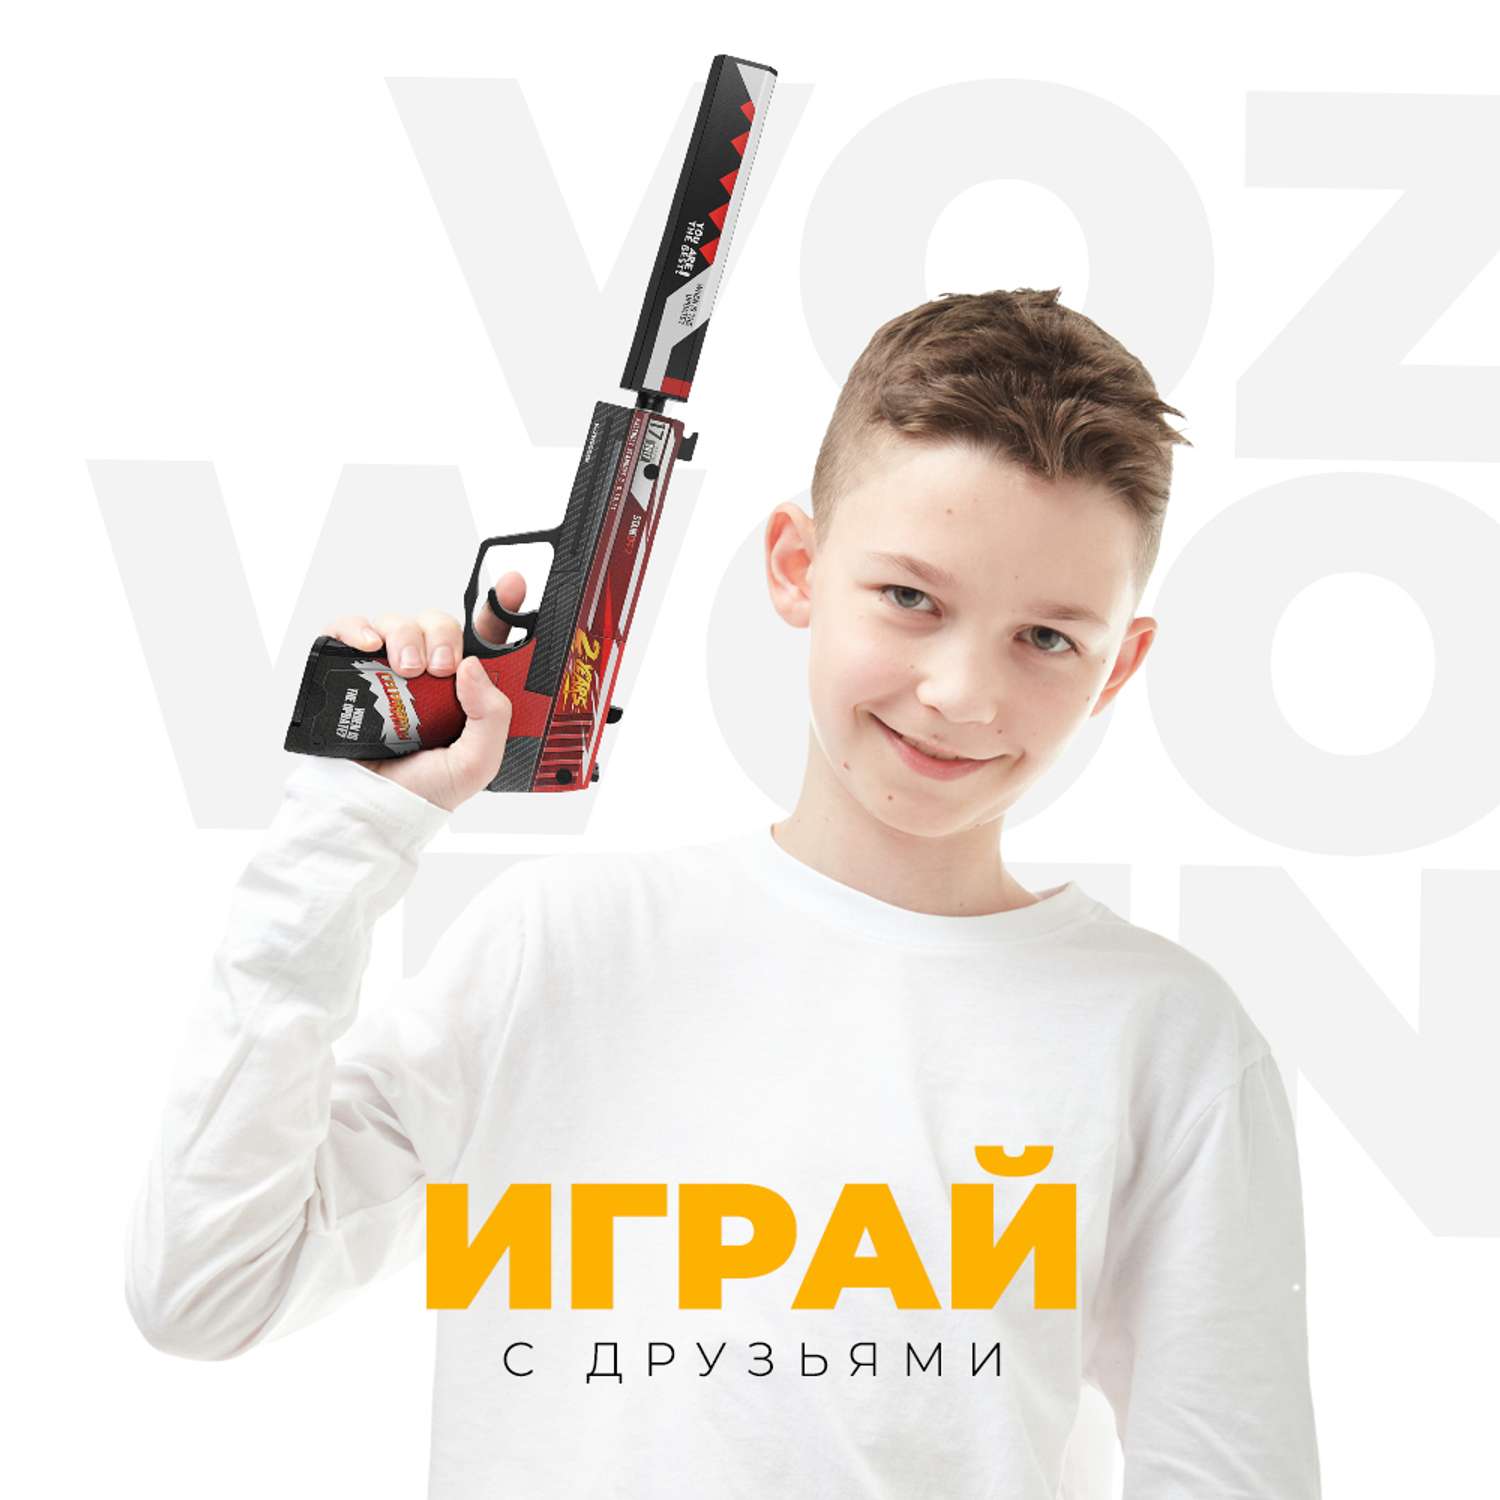 Игрушечный пистолет VozWooden USP 2 года Красный Стандофф 2 резинкострел деревянный - фото 6